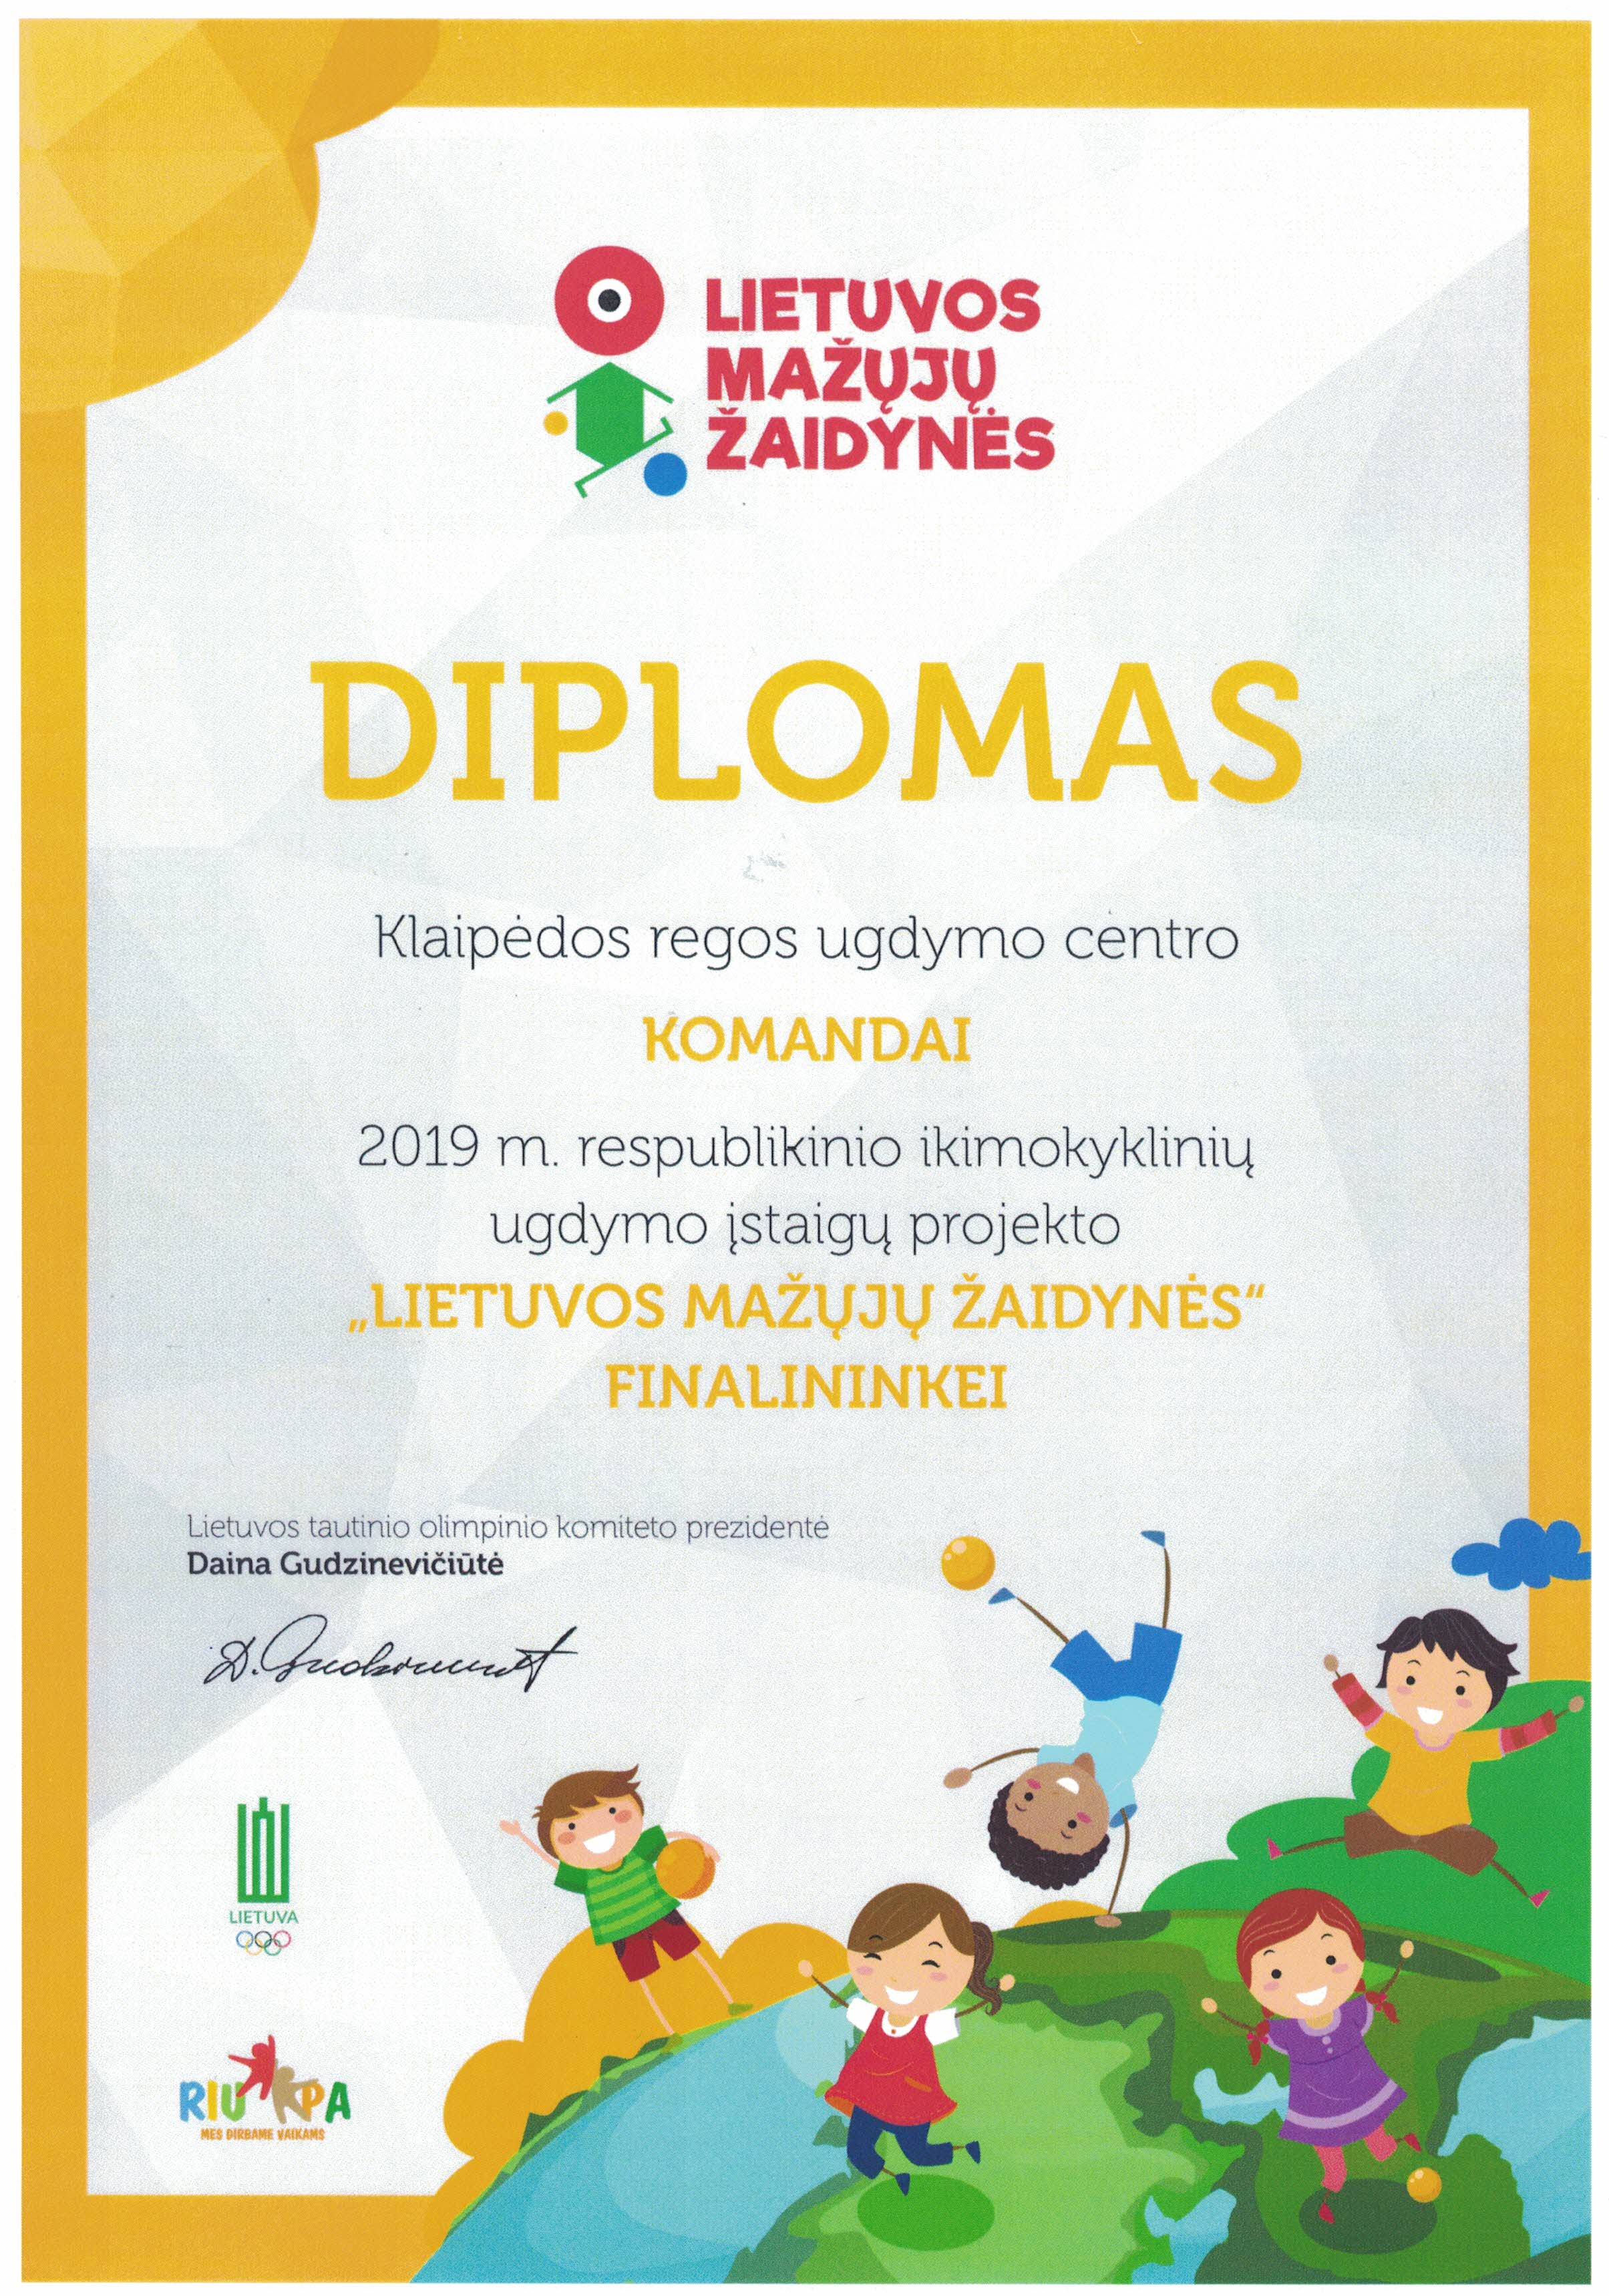 Diplomas, Lietuvos mažųjų žaidynių komandai